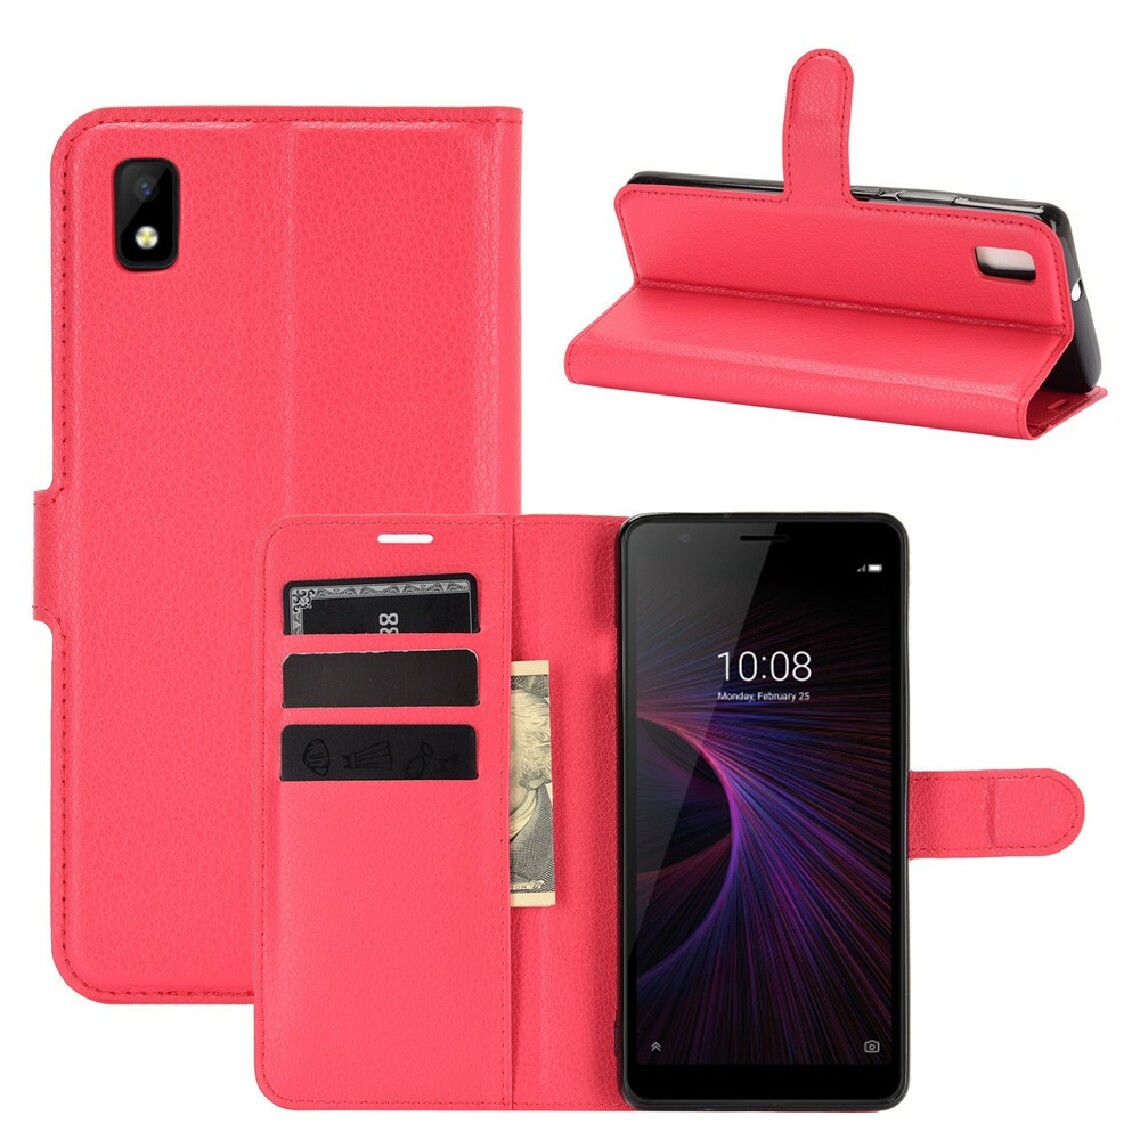 Other - Etui en PU texture de litchi avec support rouge pour votre ZTE Blade L210 - Coque, étui smartphone